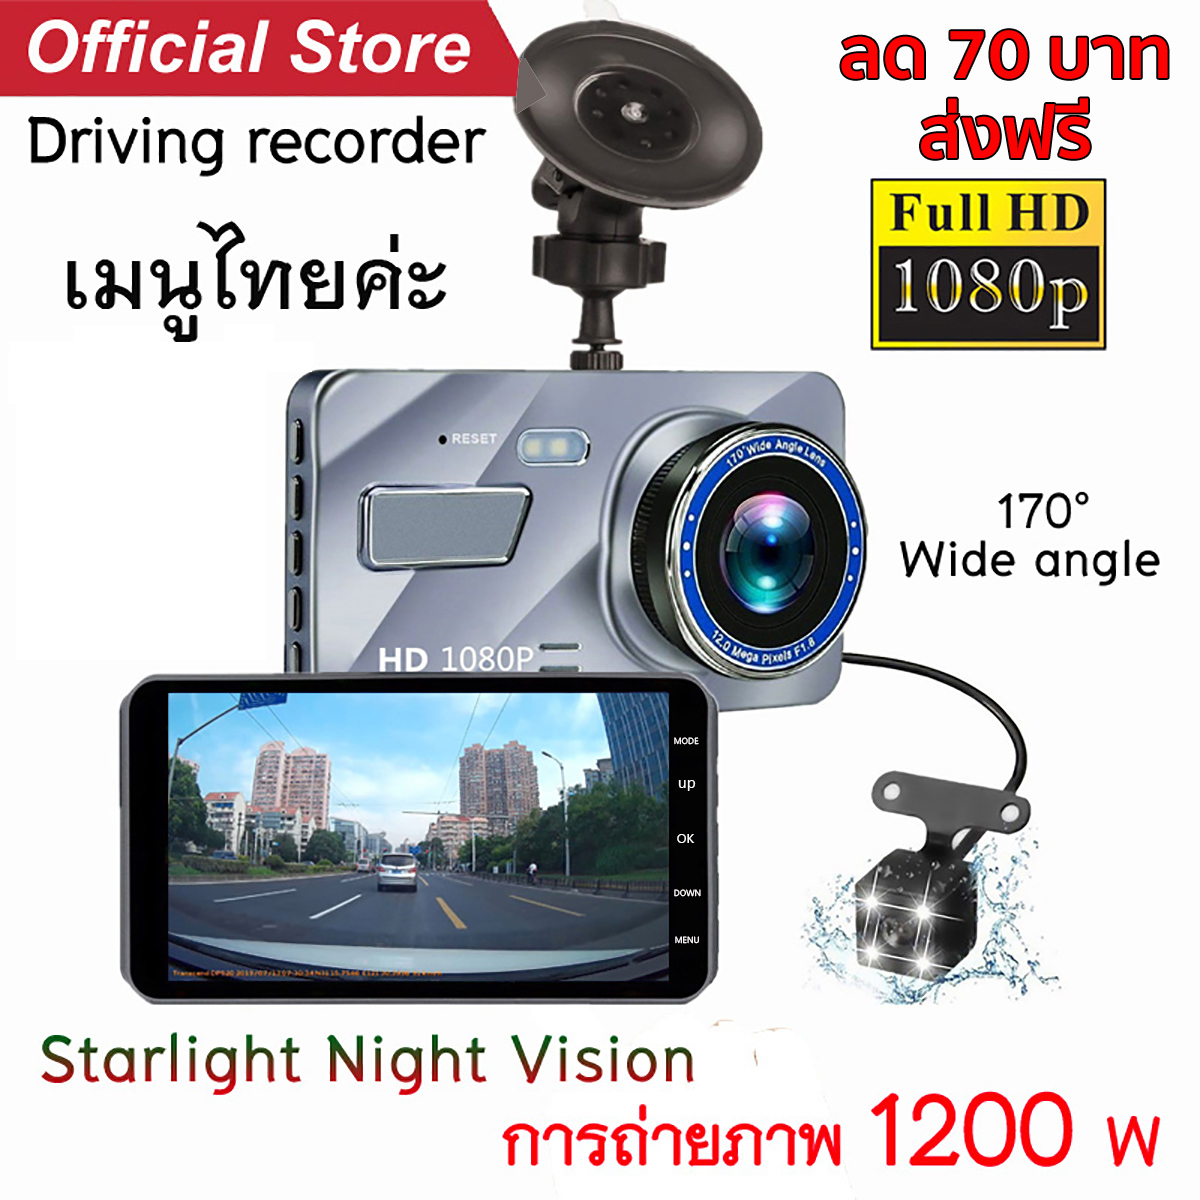 กล้องติดรถยนต์ รับประกัน1ปี กล้องถอยหลัง เมนูภาษาไทย​  2กล้อง Car Camera หน้า-หลัง WDR+HDR กล้องหน้าติดรถยนต์ Driving Recorder A10 1080P หน้าจอใหญ่ 4.0 สีเงิน